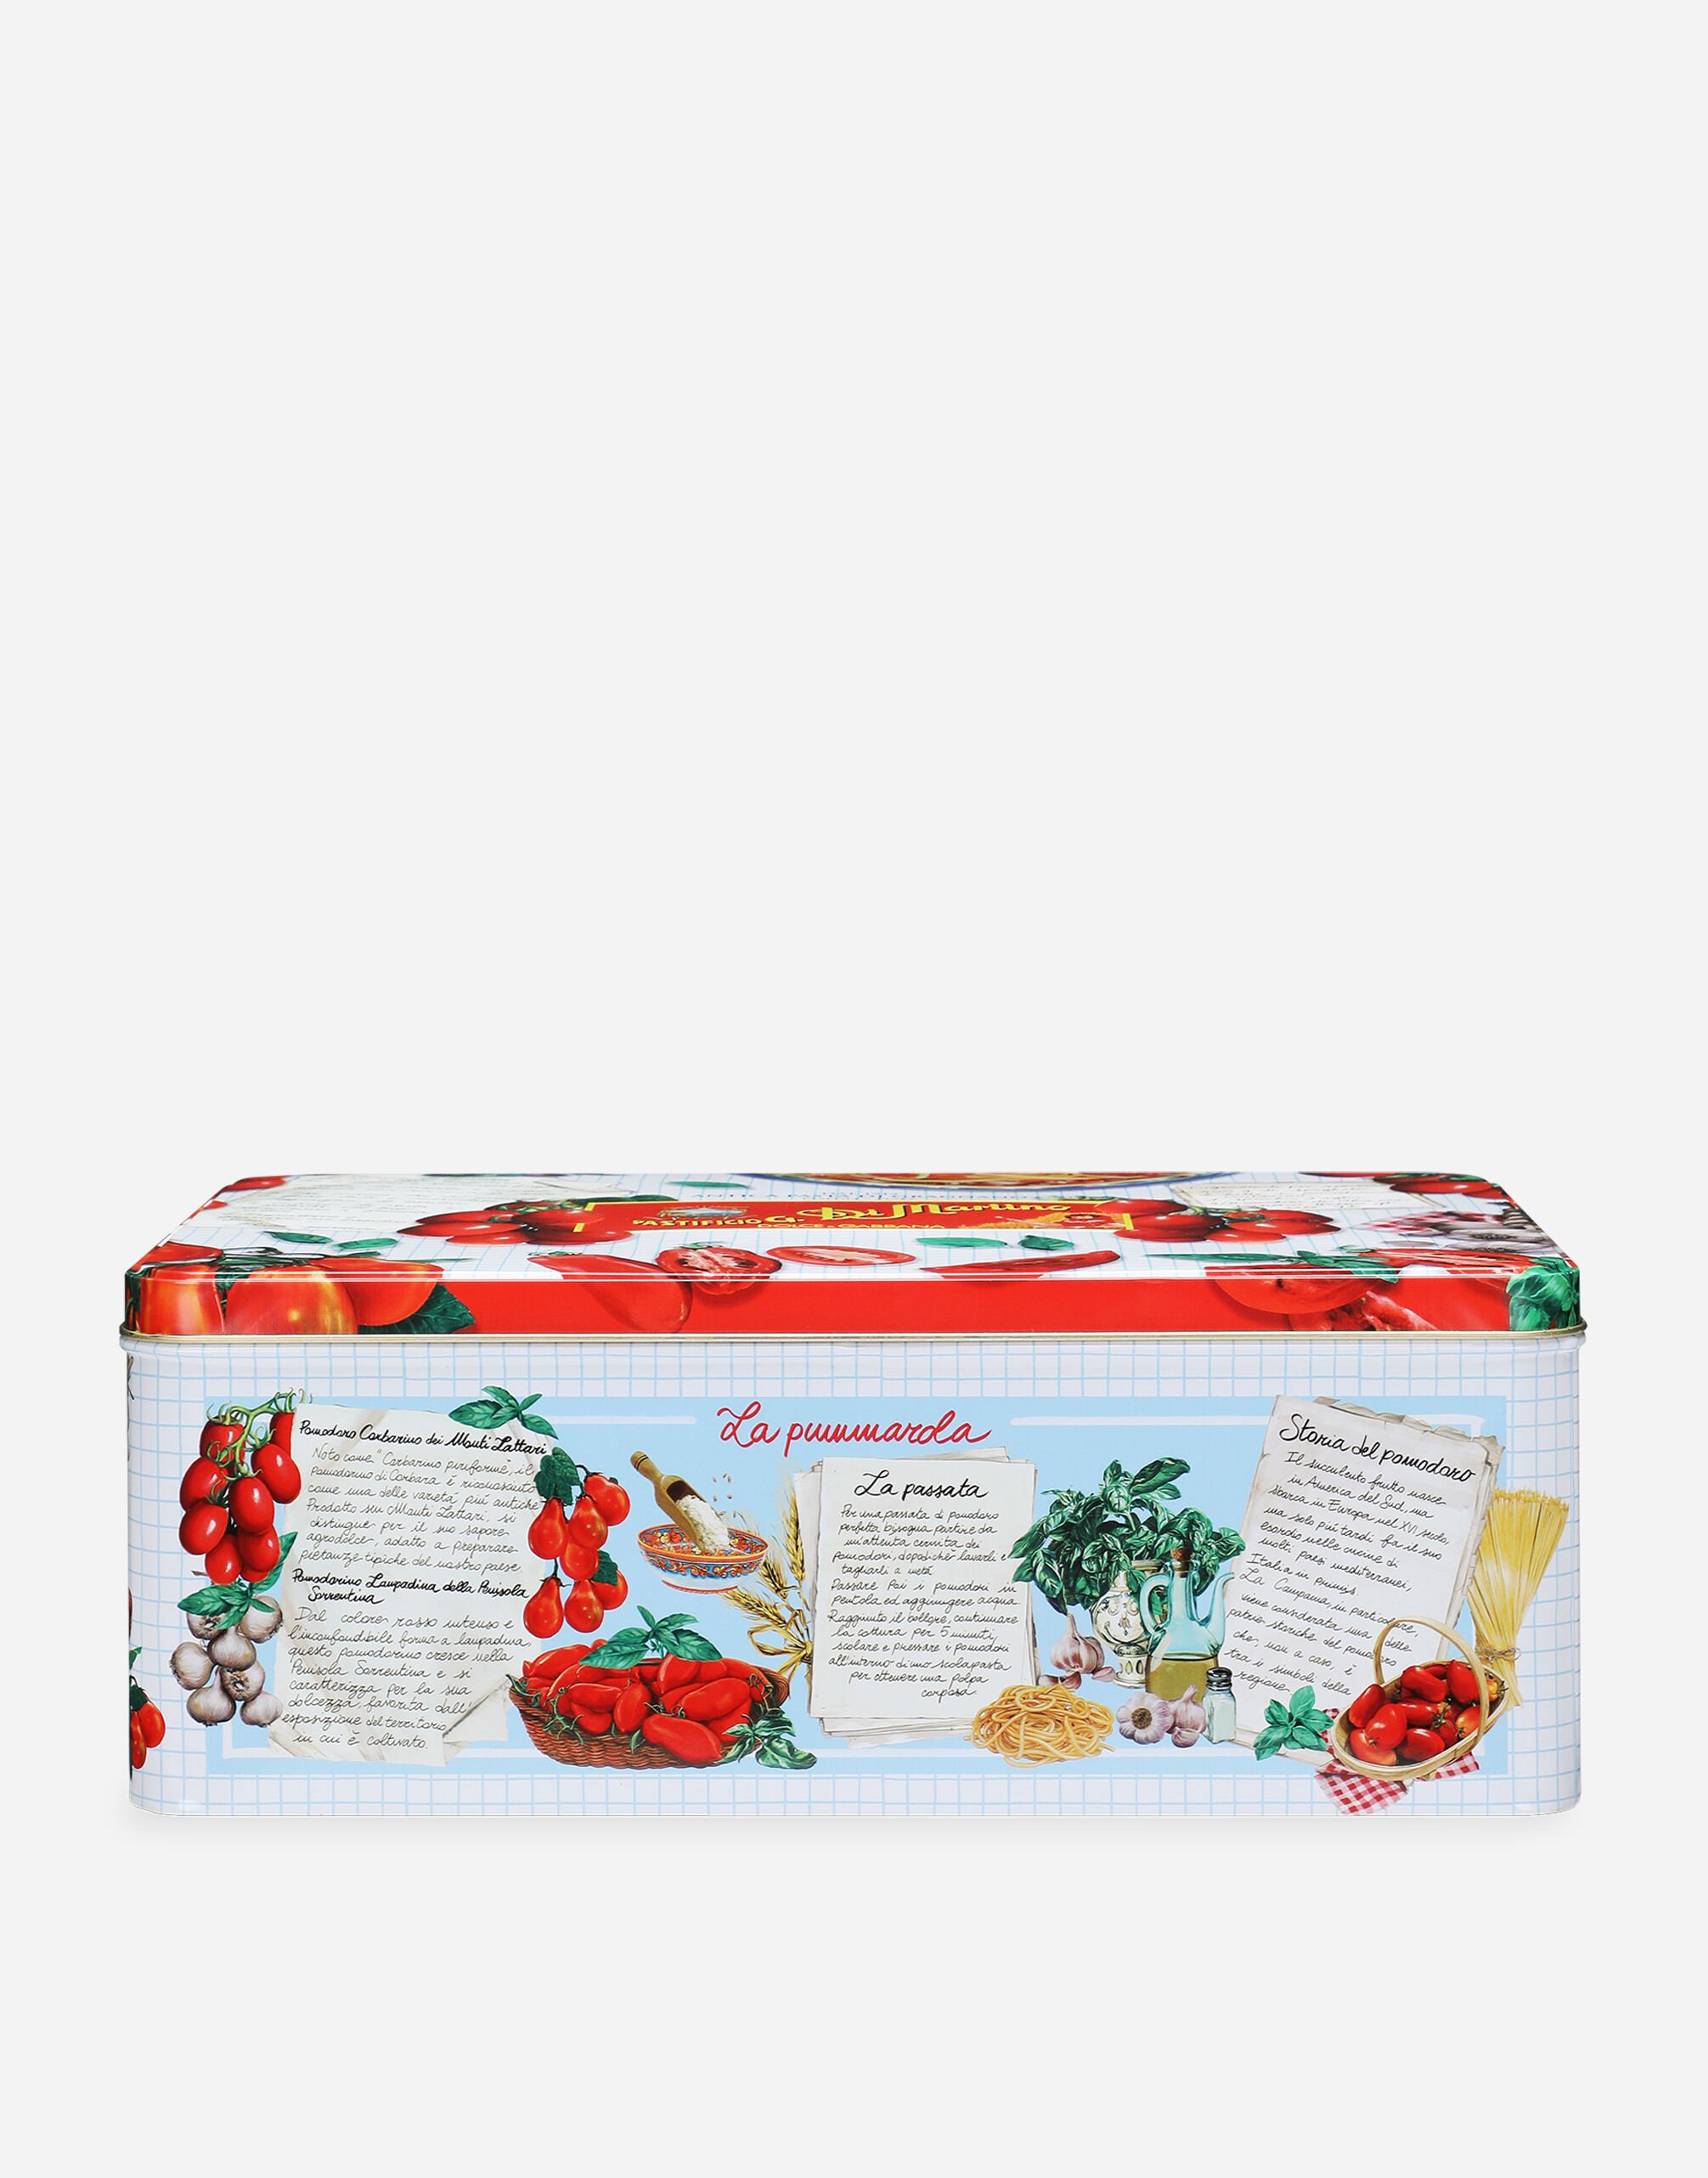 Dolce & Gabbana La Pummarola - Caja regalo compuesta por 5 paquetes de pasta de Gragnano IGP, 2 latas de tomates Corbarino y un delantal Dolce&Gabbana Multicolor PS800URES10